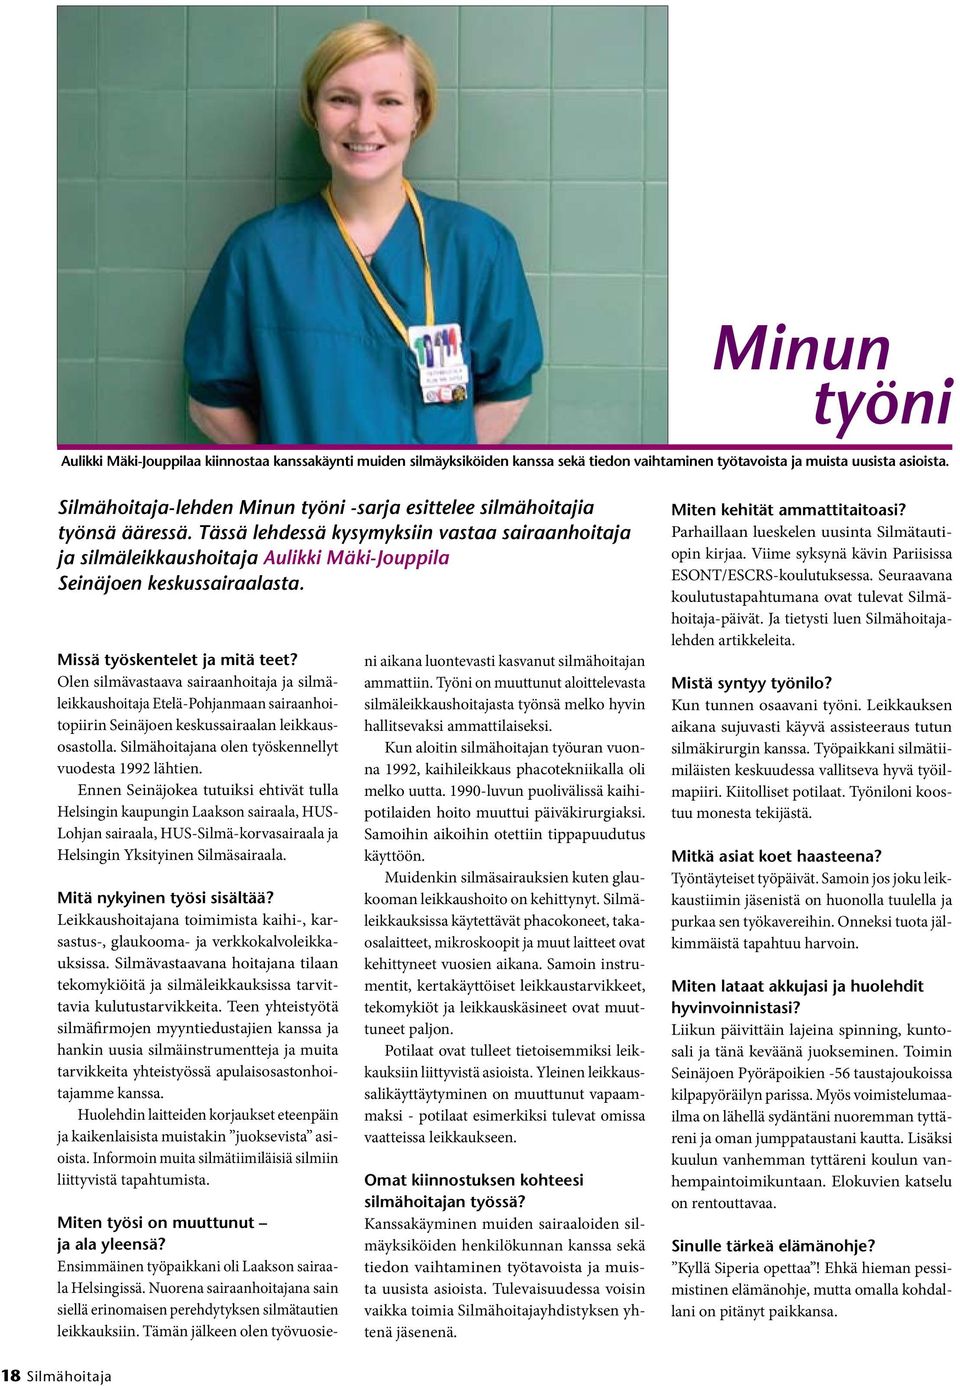 Tässä lehdessä kysymyksiin vastaa sairaanhoitaja ja silmäleikkaushoitaja Aulikki Mäki-Jouppila Seinäjoen keskussairaalasta. Missä työskentelet ja mitä teet?